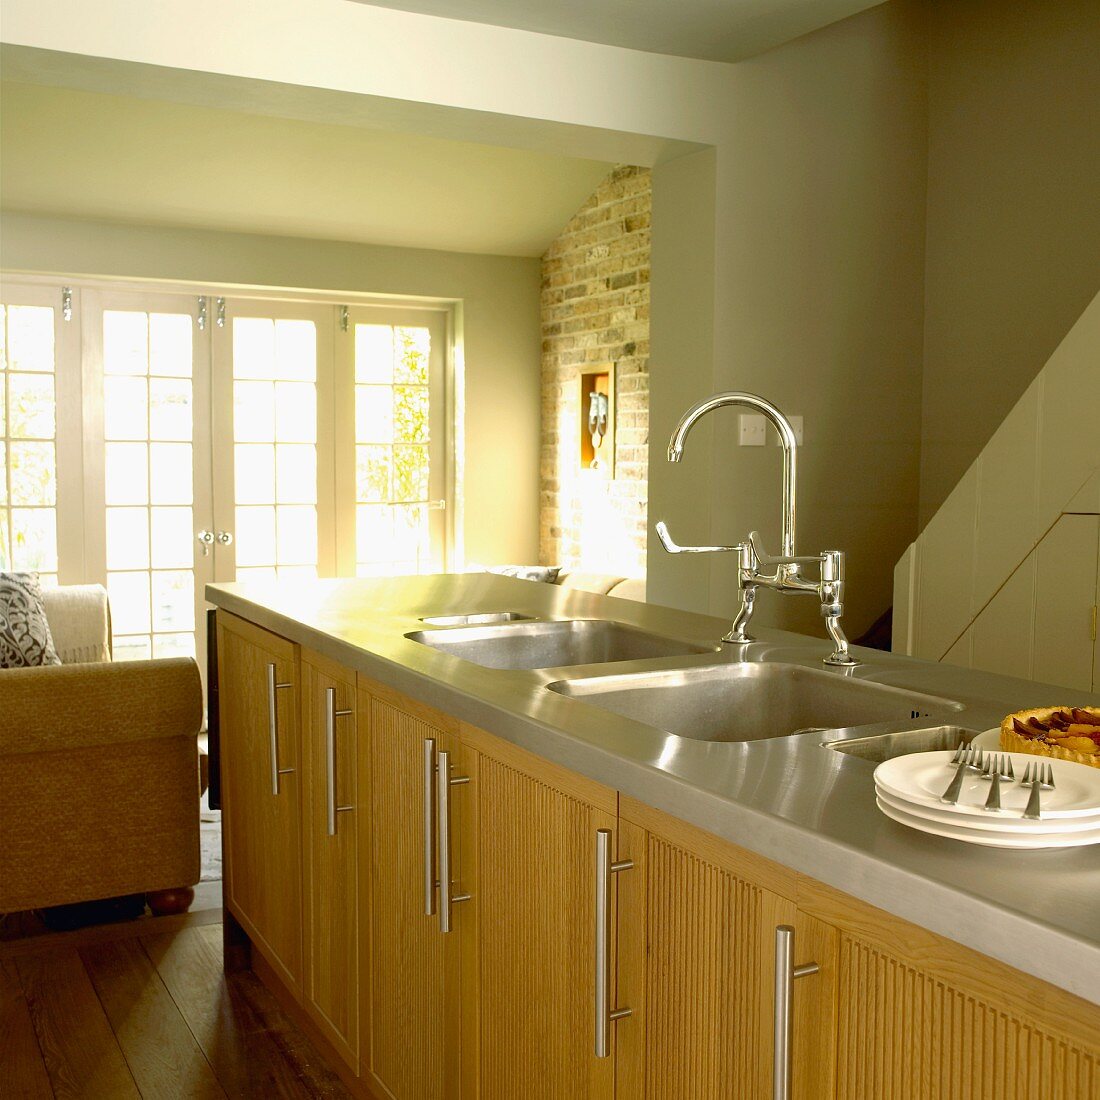 Küche im Landhausstil mit pastellgrünen Wänden, Holzmöbeln und Mittelblock mit Spülbecken